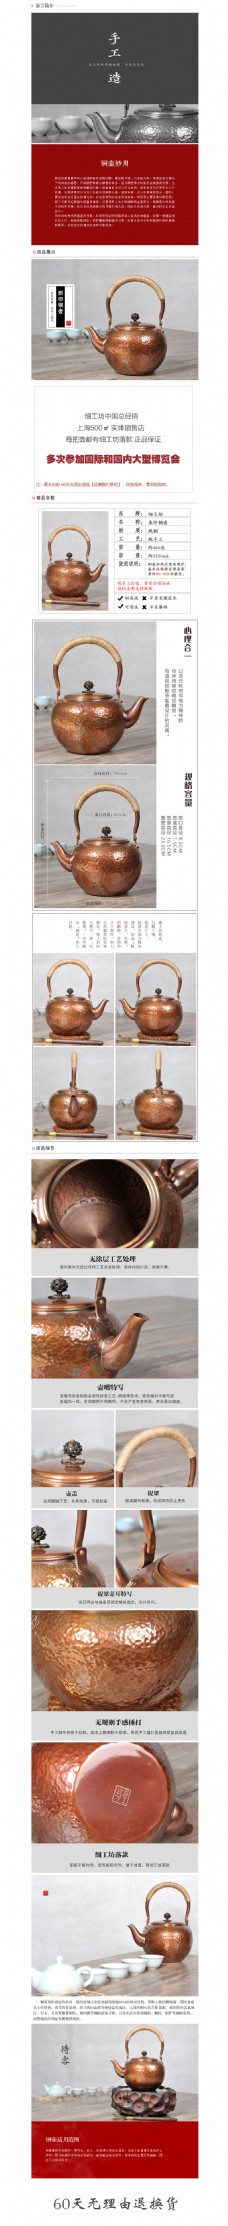 铜壶详情页 茶壶 茶具铜壶通用 日本茶壶